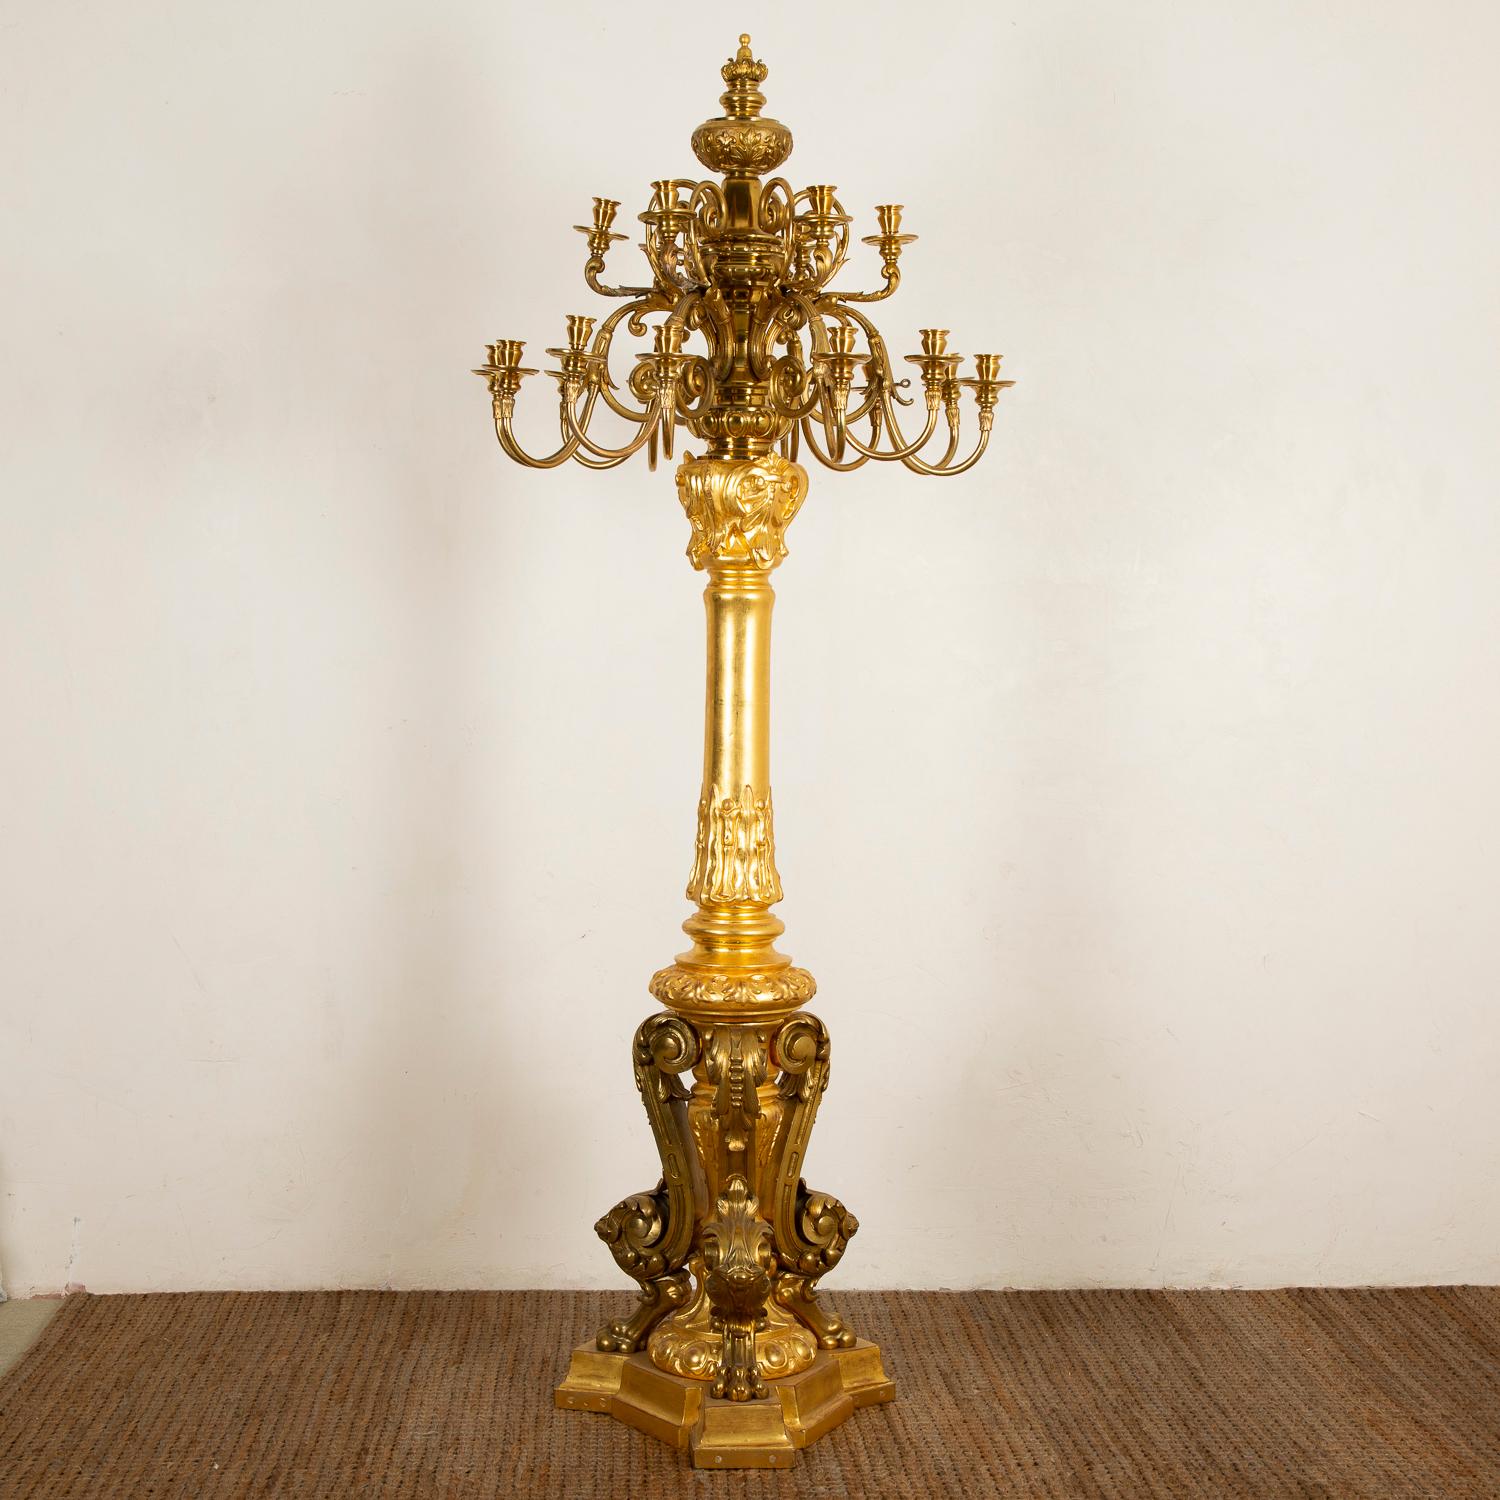 Großer Kandelaber aus vergoldetem Holz und vergoldeter Bronze im Stil Louis XVI, Paris, um 1870.

Jeder Kandelaber hat 18 Arme auf zwei Etagen.

Die Kandelaber können für die Verwendung mit modernen Lichtern verdrahtet werden, die Kerzenhalter